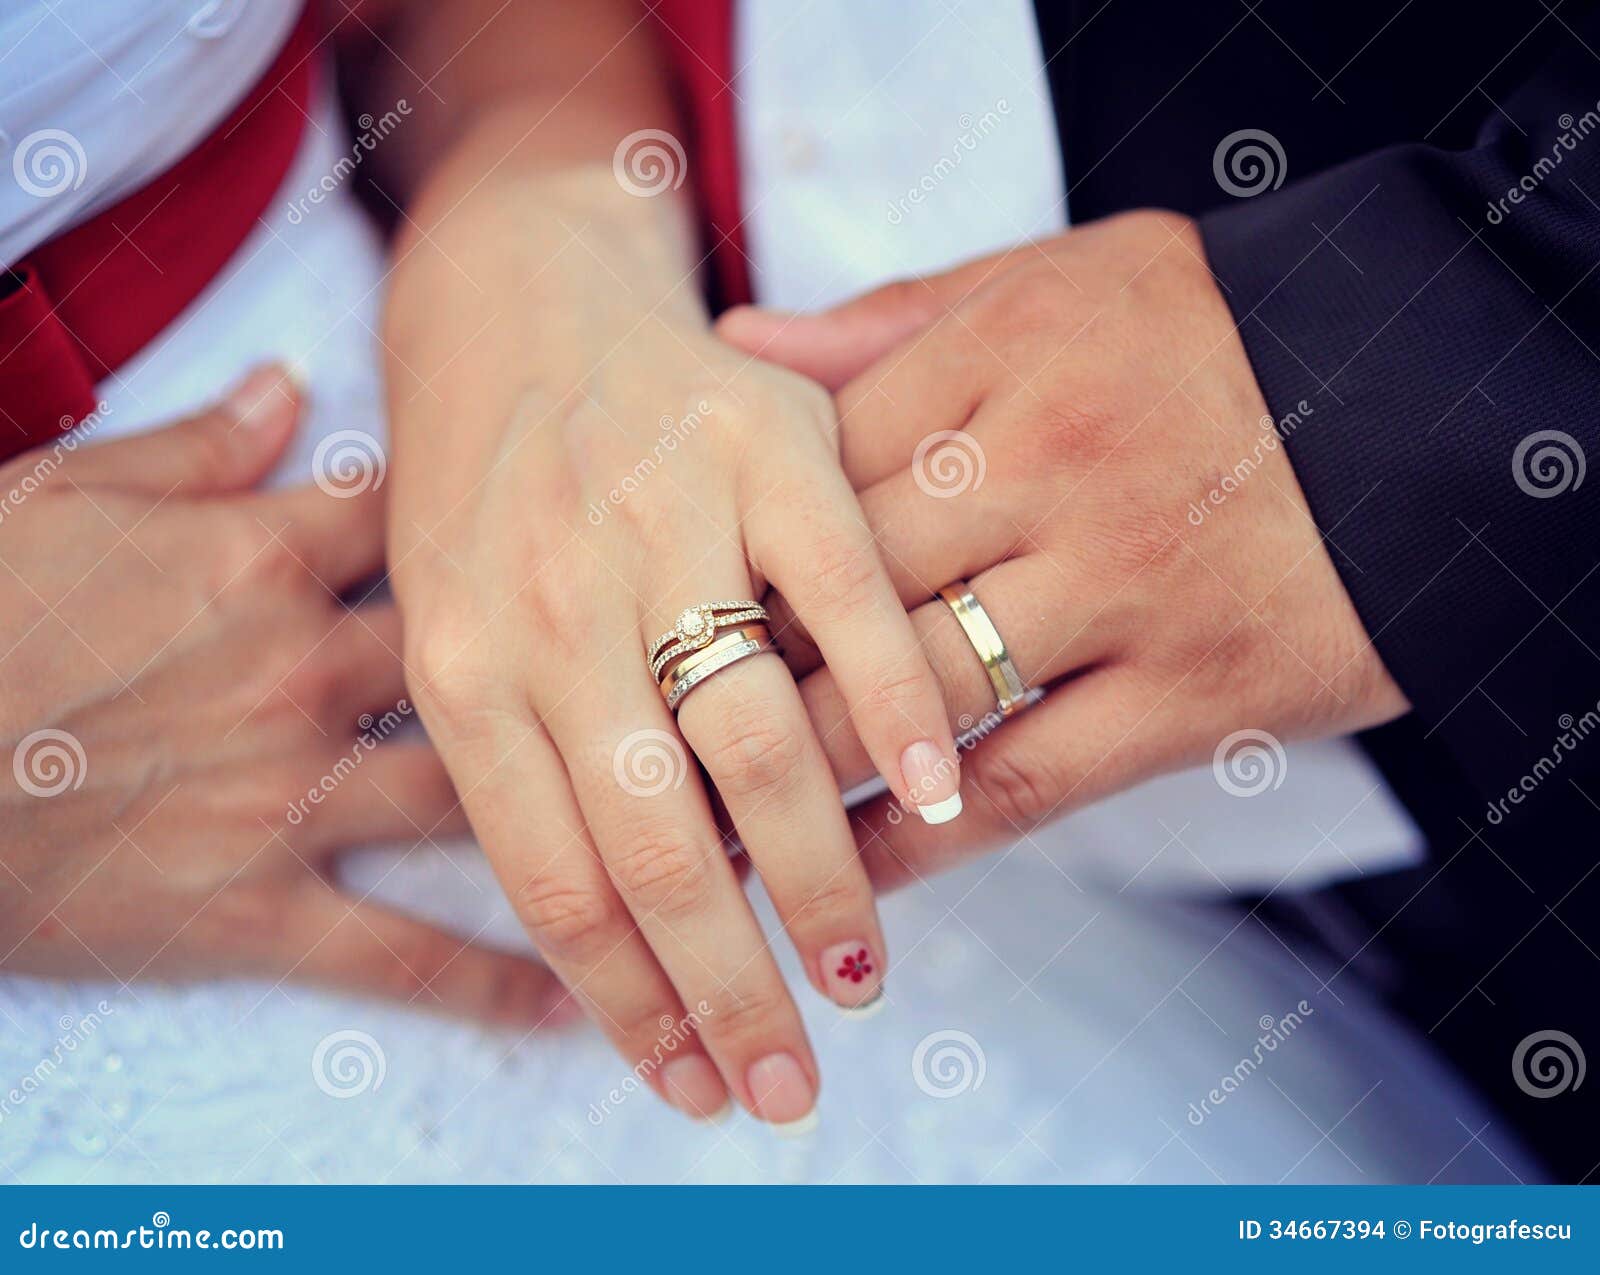 Замуж на какую руку кольцо. Кольцо на пальце предложение. Помолвочное кольцо на пальце. Рука с кольцом предложение. Рука с помолвочным кольцом.